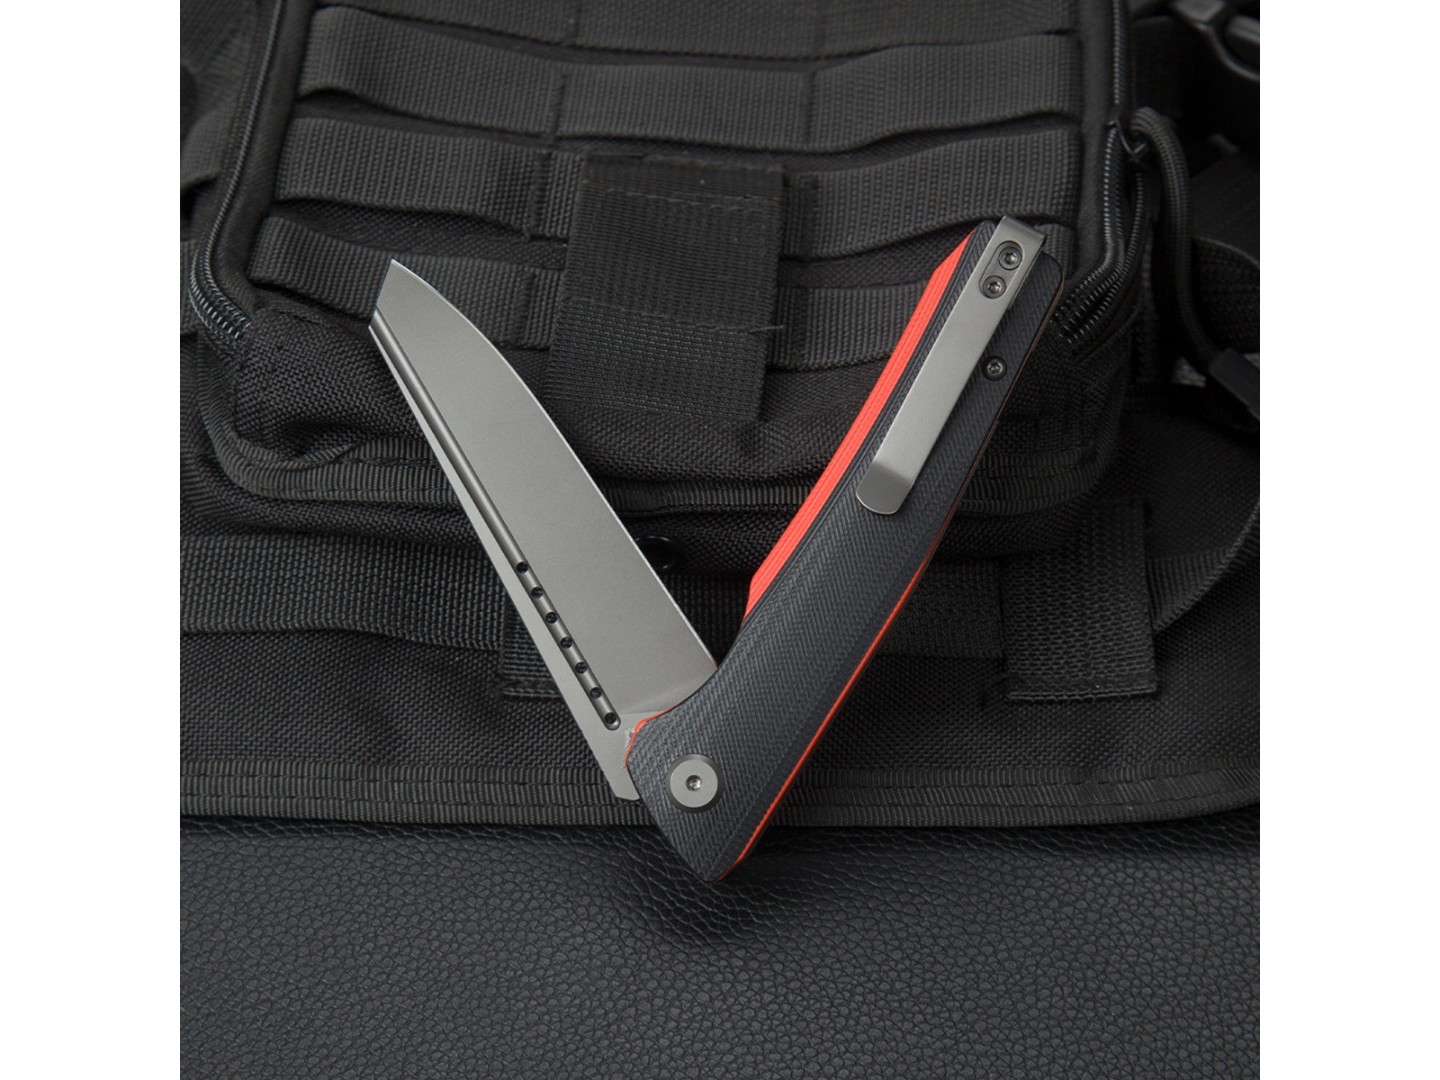 Нож Bestech Slyther BG51C сталь 14C28N grey, рукоять G10 black & red